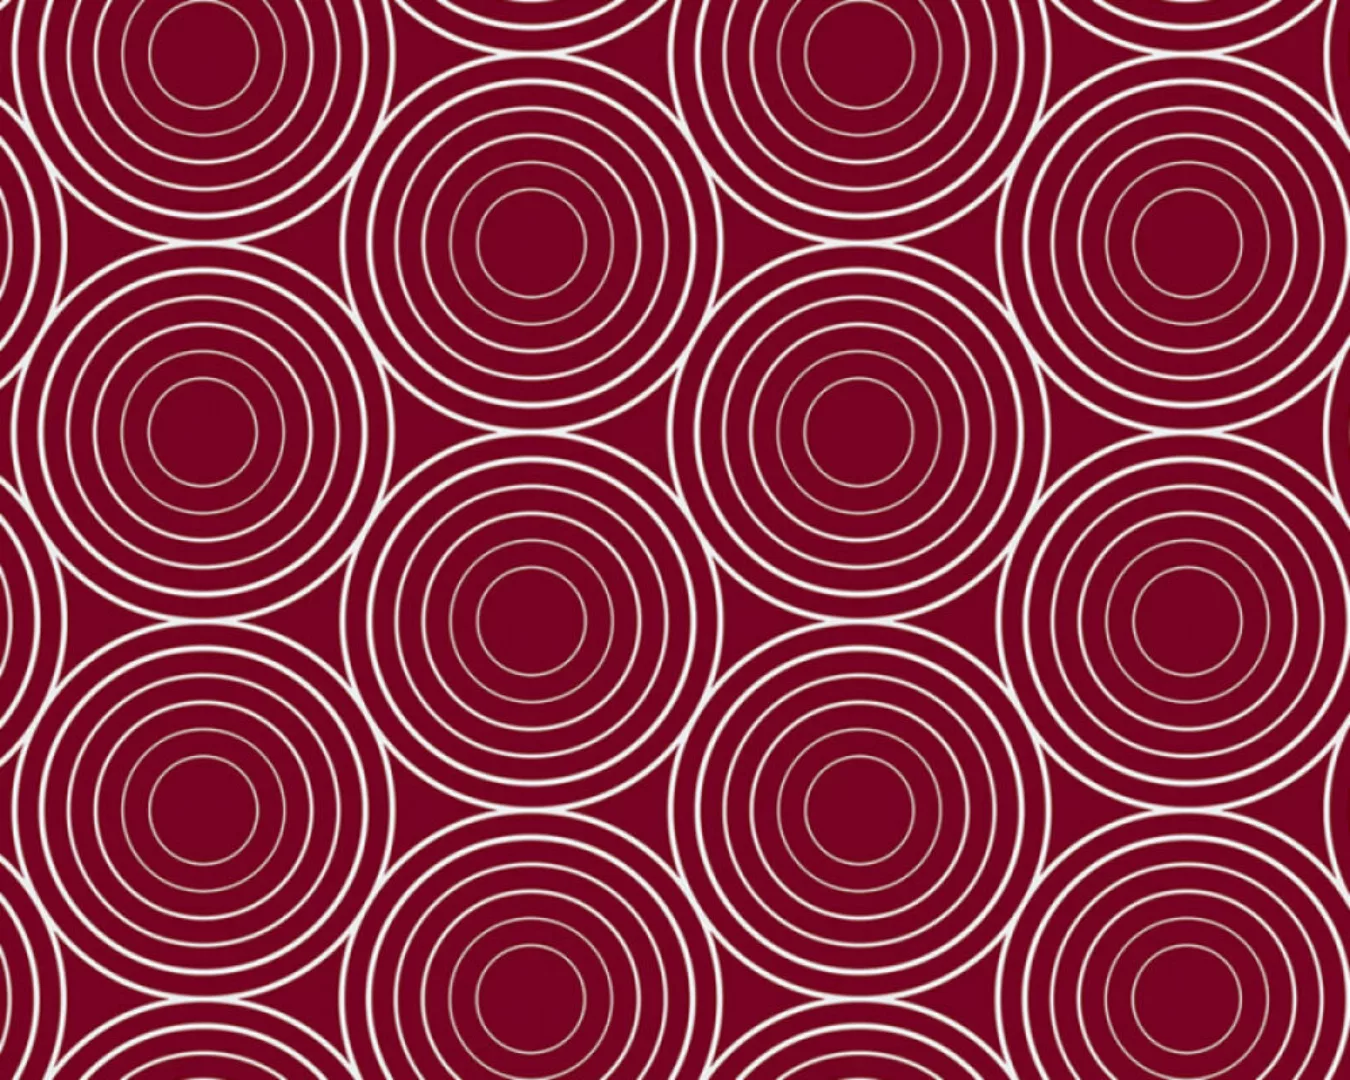 Fototapete "Kreise rot" 6,00x2,50 m / Glattvlies Brillant günstig online kaufen